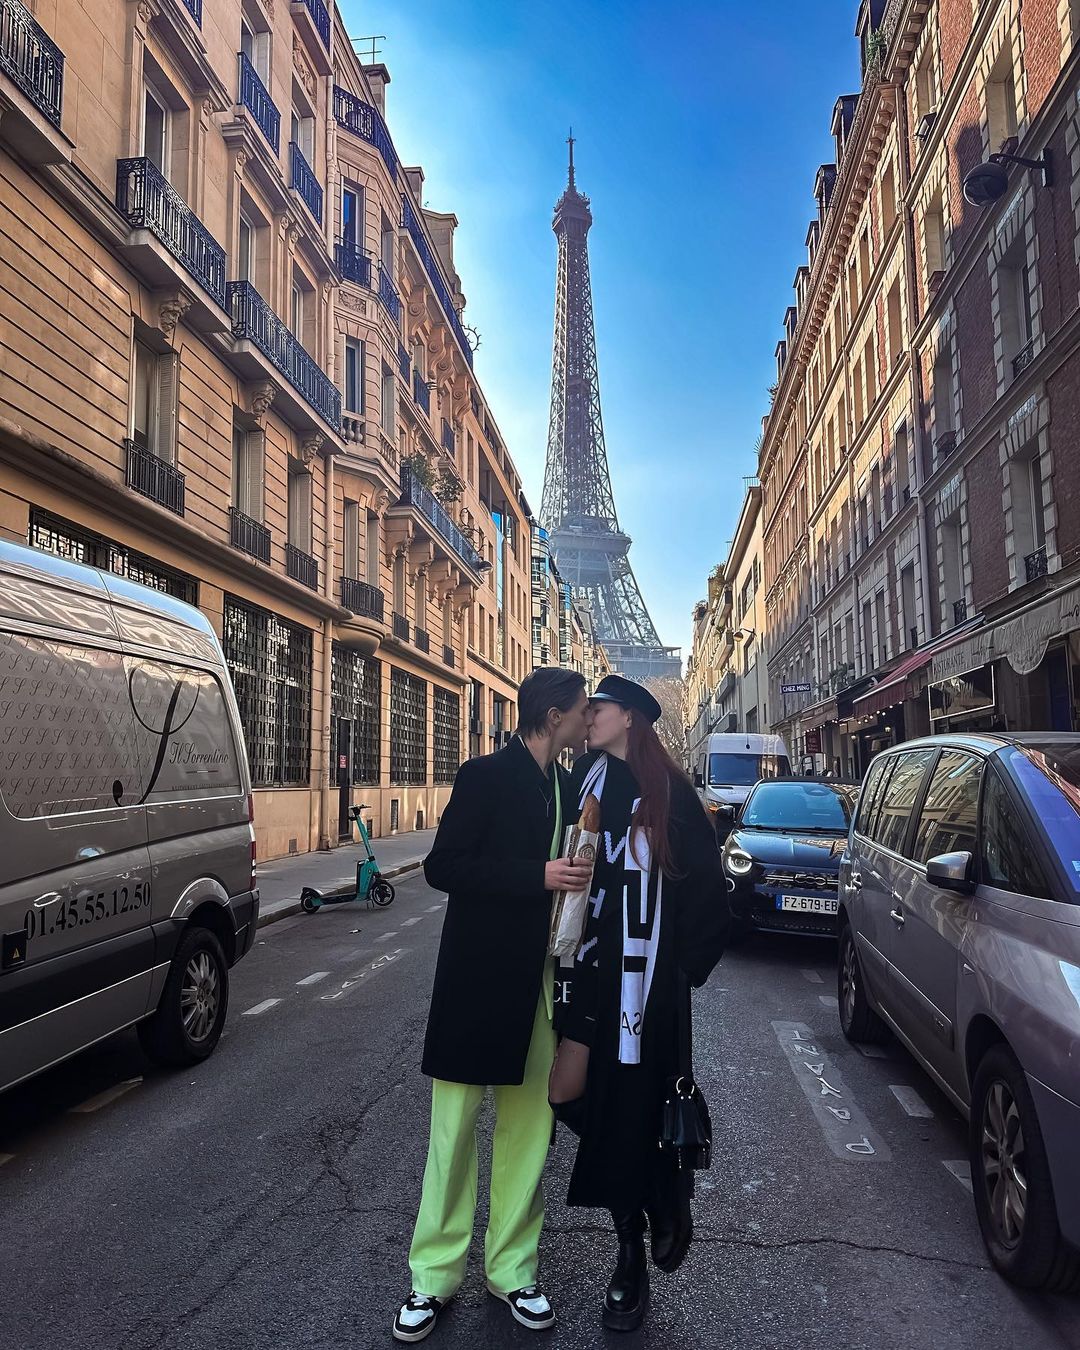 “Хочу жить, а не выживать“: старшая дочь Оли Поляковой возмутила Сеть счастливым фото из Парижа